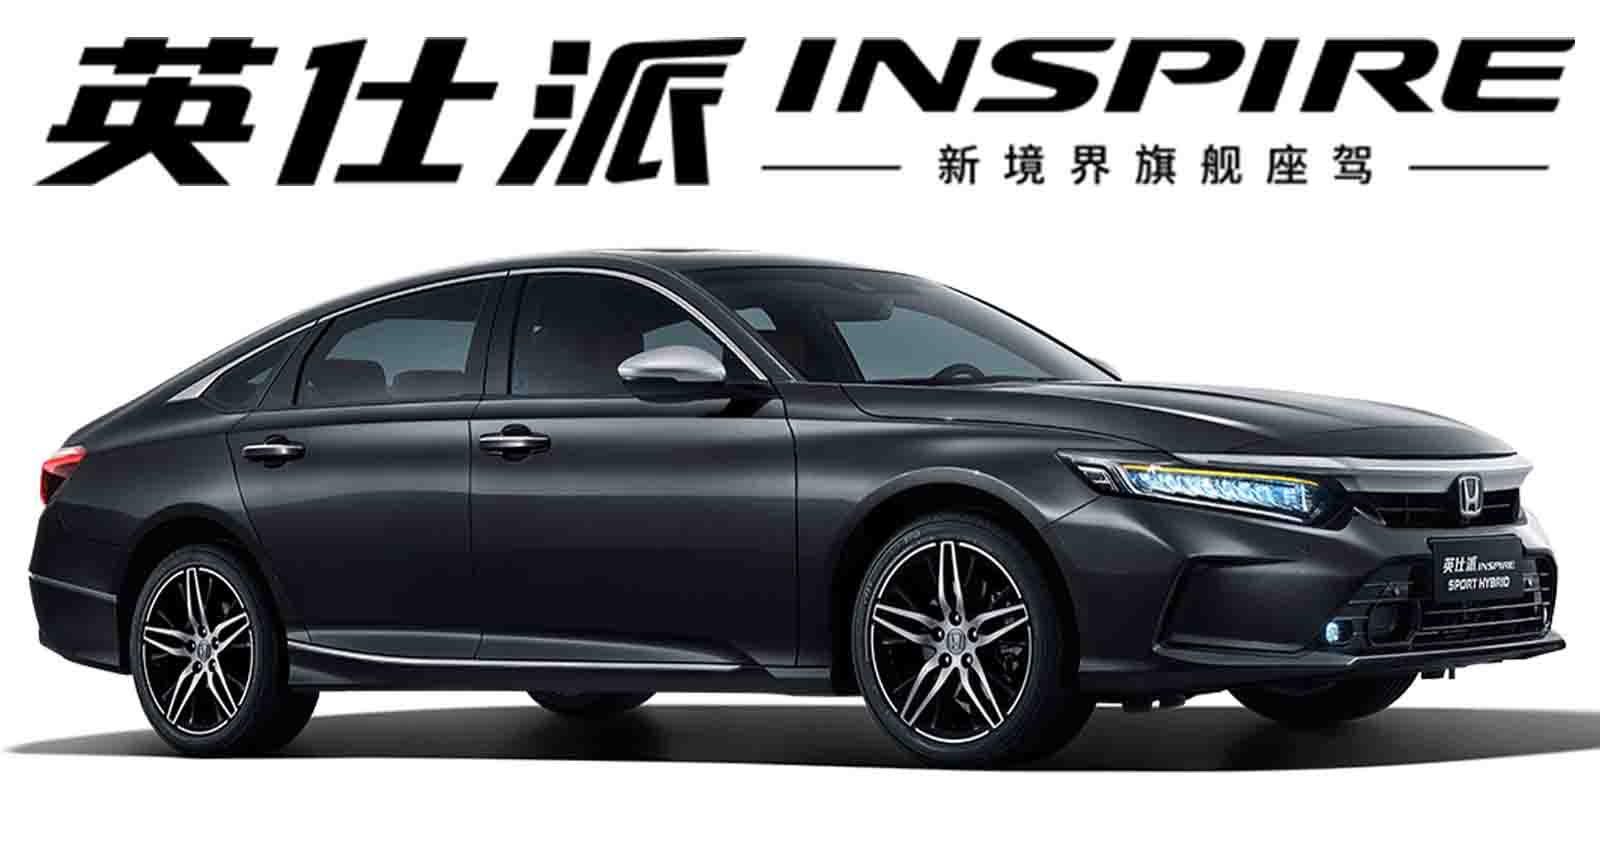 เปิดตัว NEW Honda INSPIRE ใหม่ เบนซิน 1.5T และไฮบริด 2.0 ในจีน